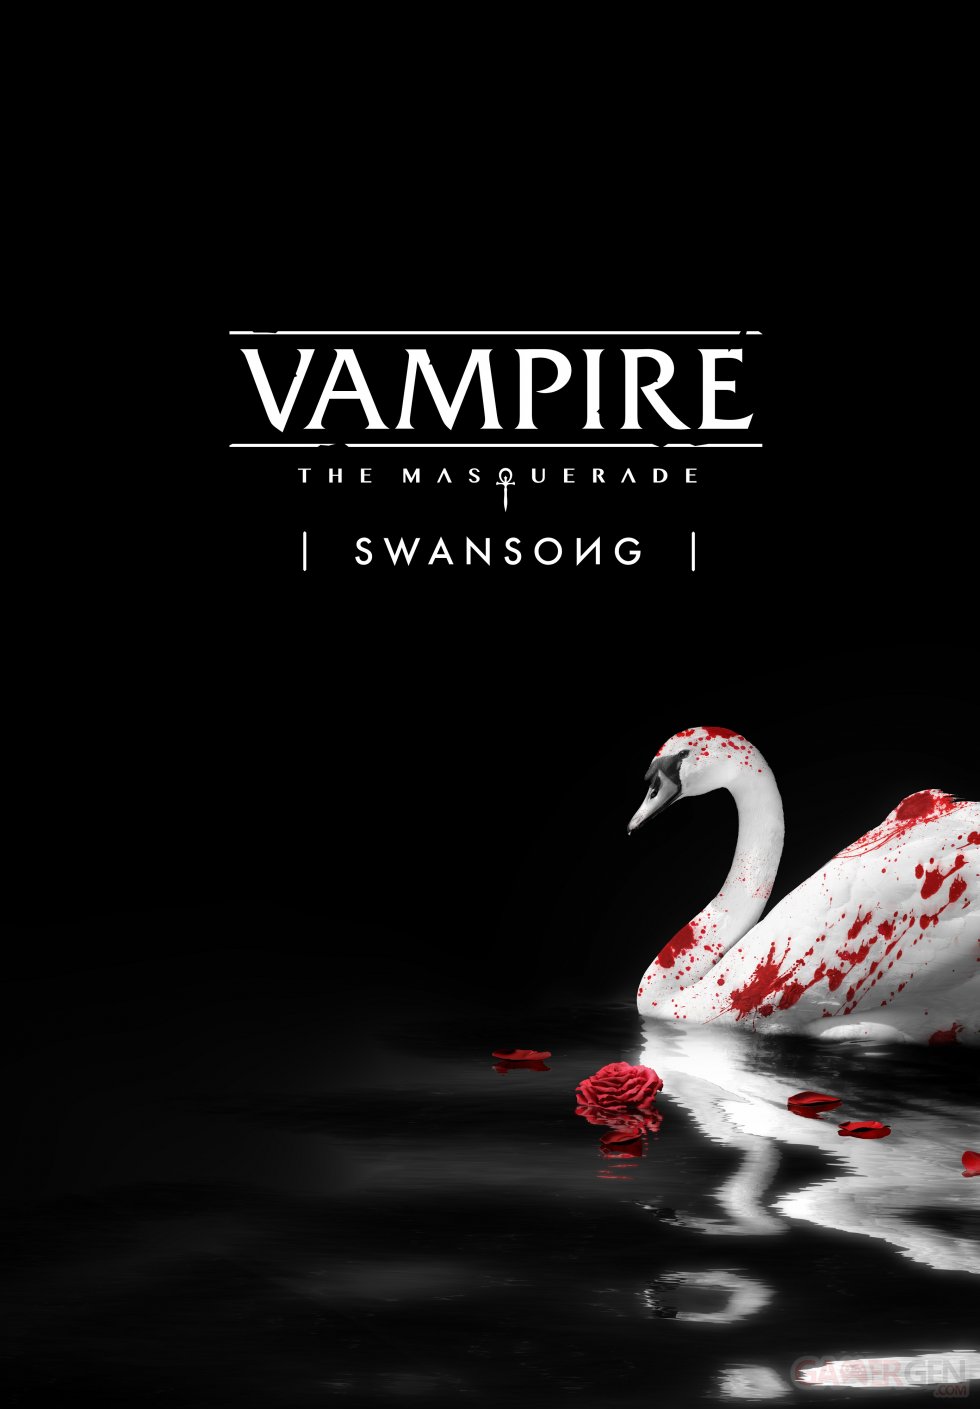 Vampire The Masquerade - Swansong Artwork